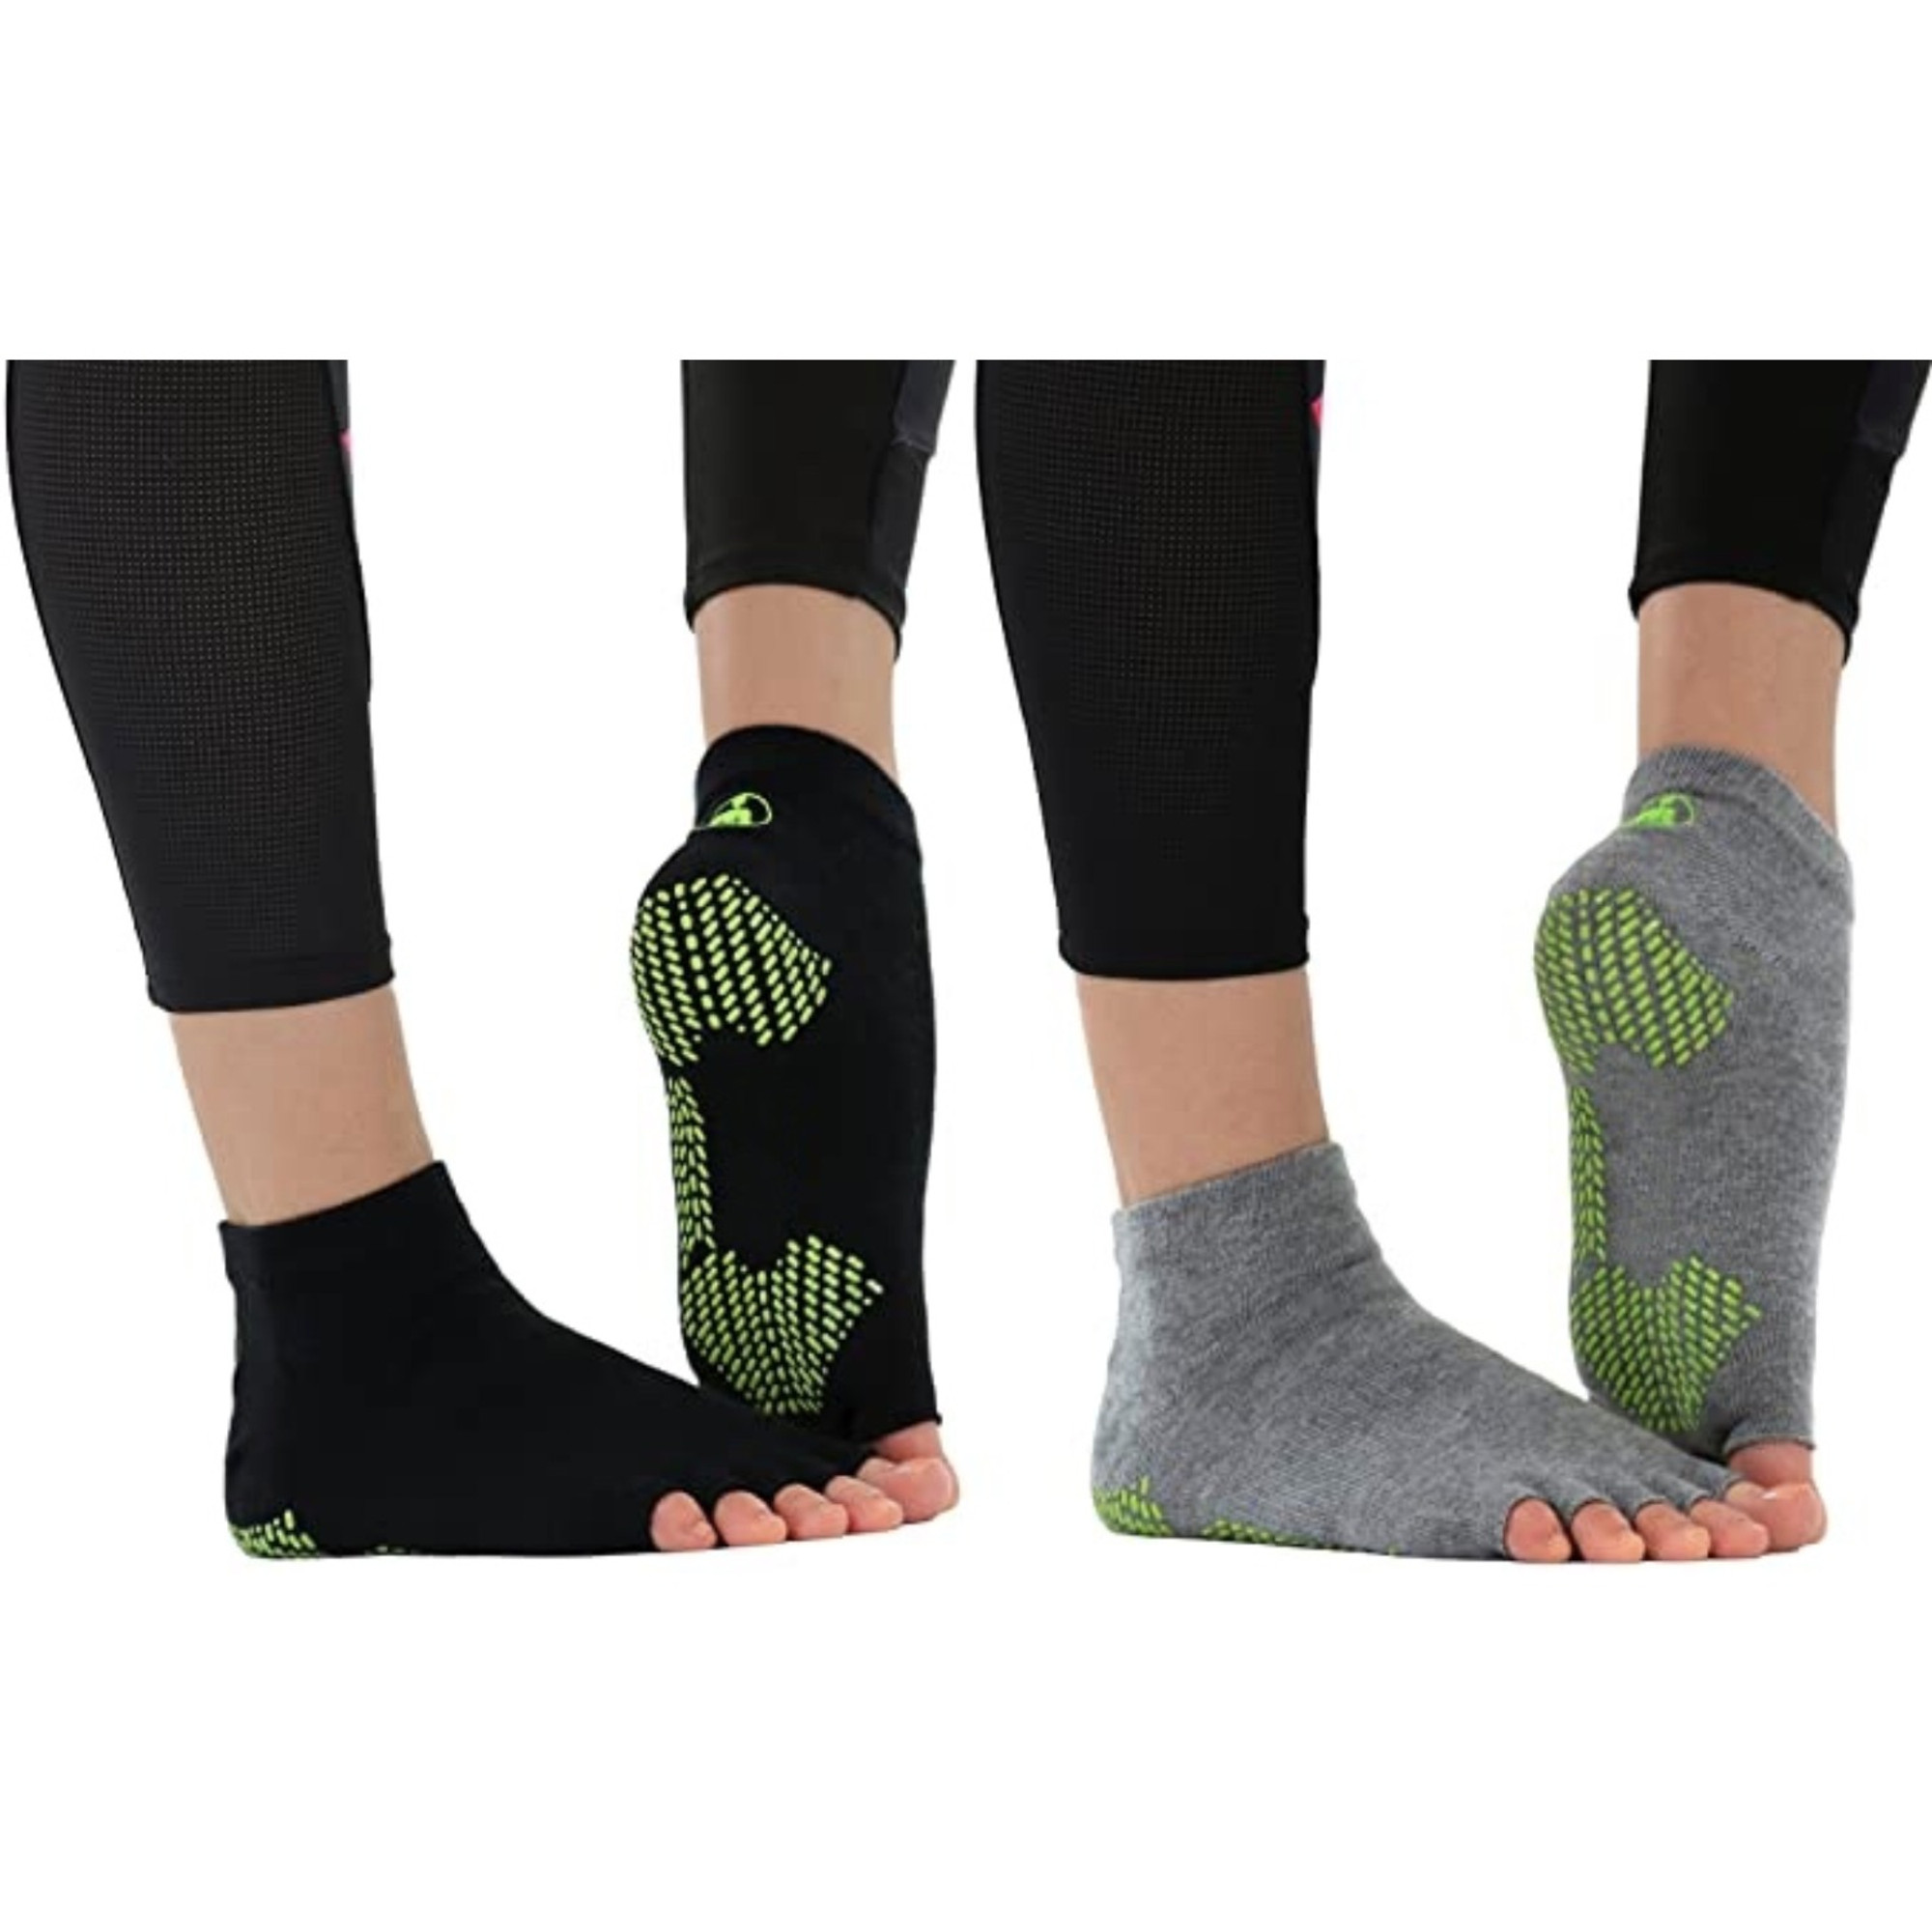 Non Slip Toeless Half Toe Yoga Socks for Women for Ballet Pilates